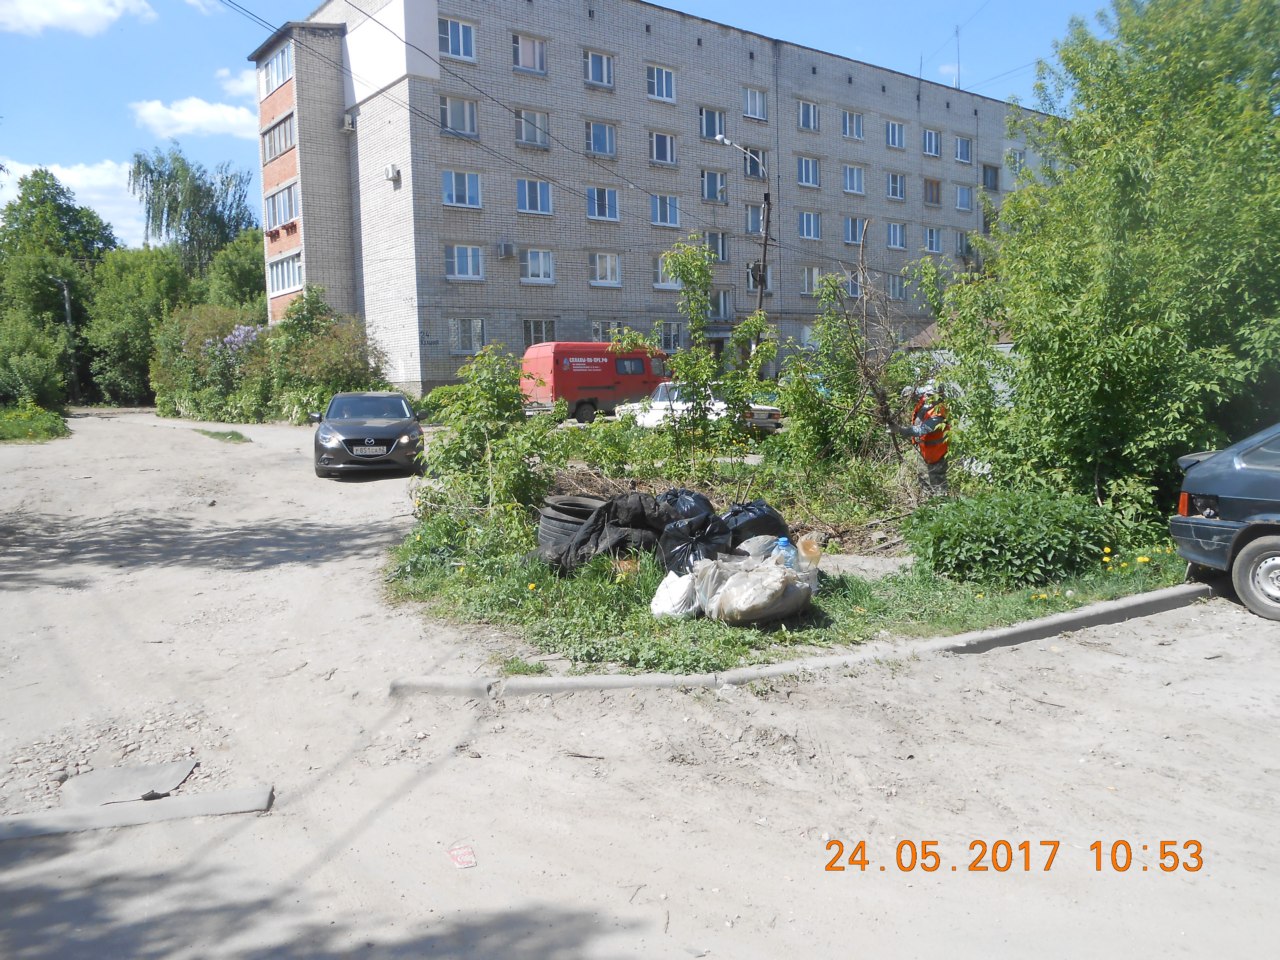 По инициативе жителей частного сектора на улице Кальной была организована уборка территории зеленой зоны от мусора 24.05.2017